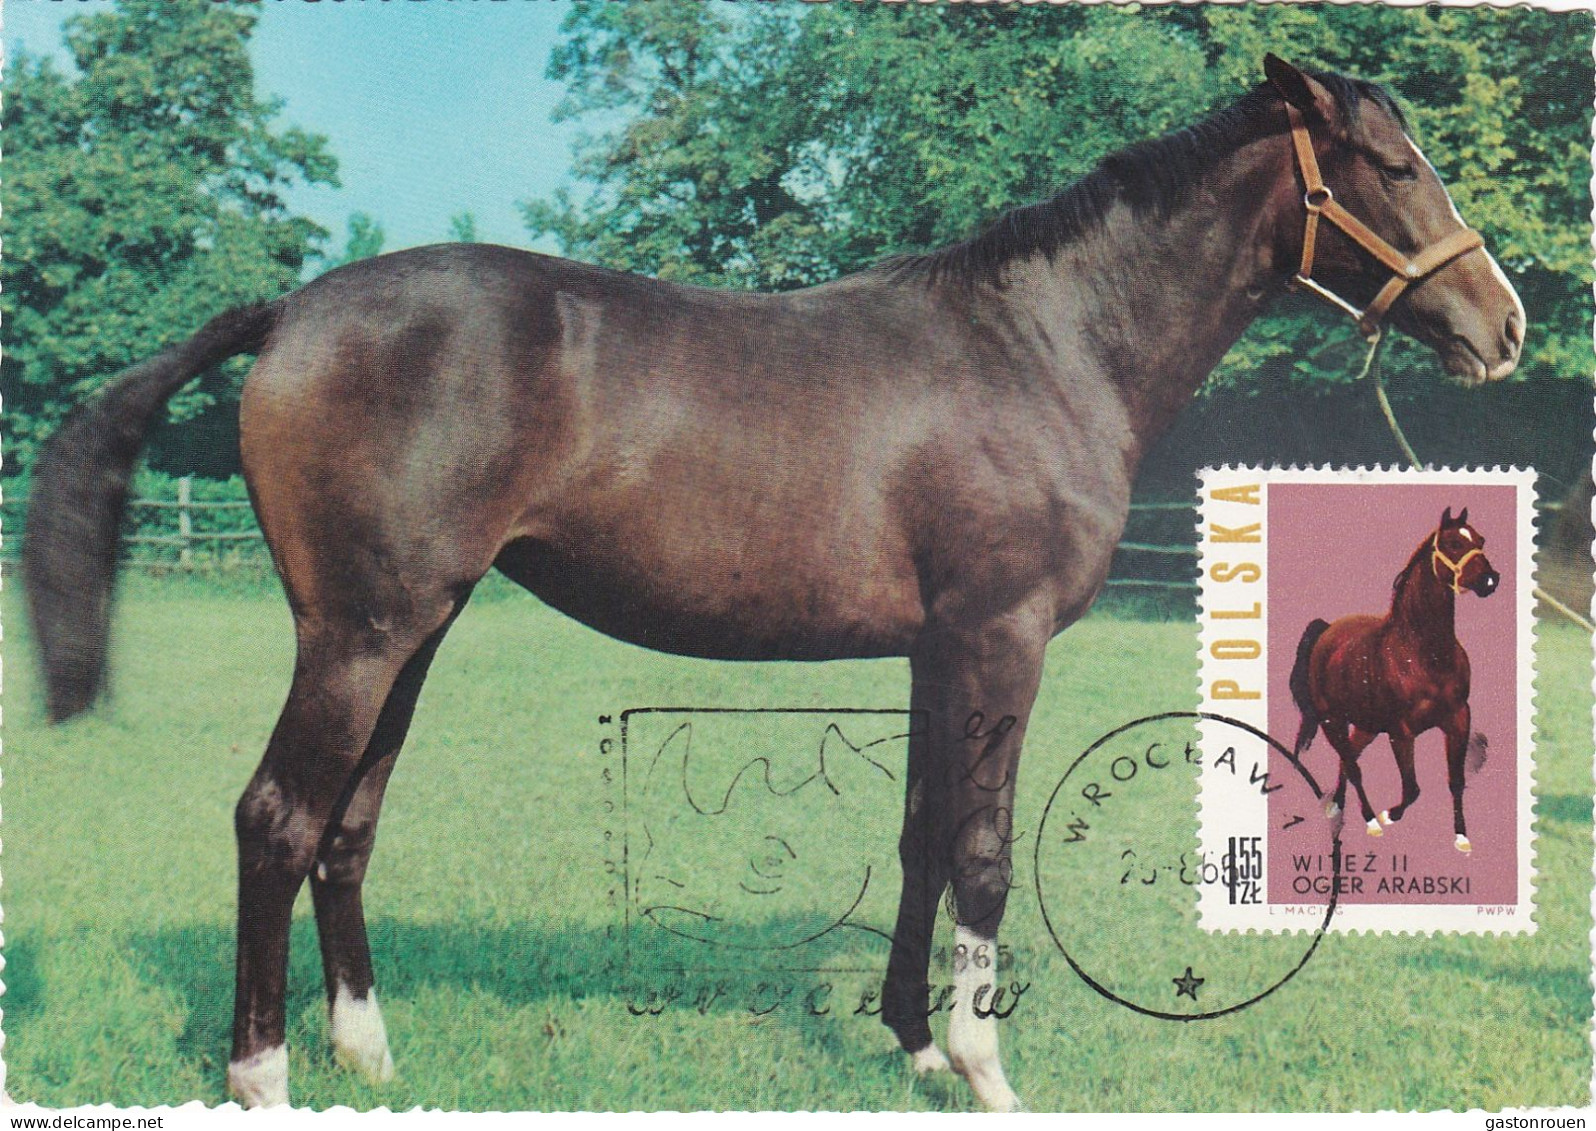 Carte Maximum Hongrie Hungary Cheval Horse 1318 - Maximumkarten (MC)